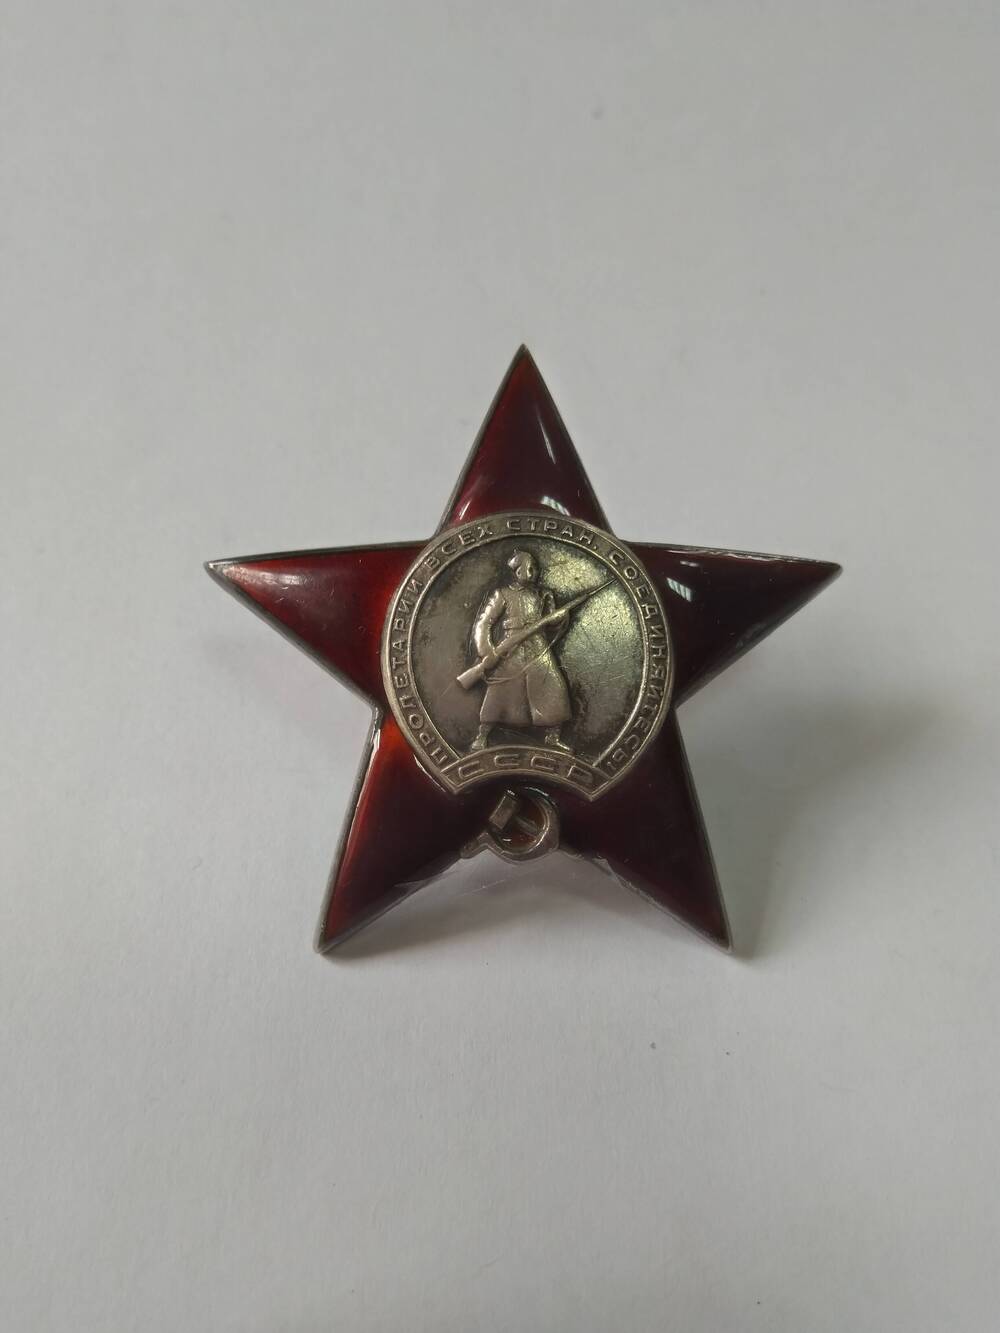 Орден Красной Звезды - государственная награда СССР, учреждённая 6 апреля 1930 года